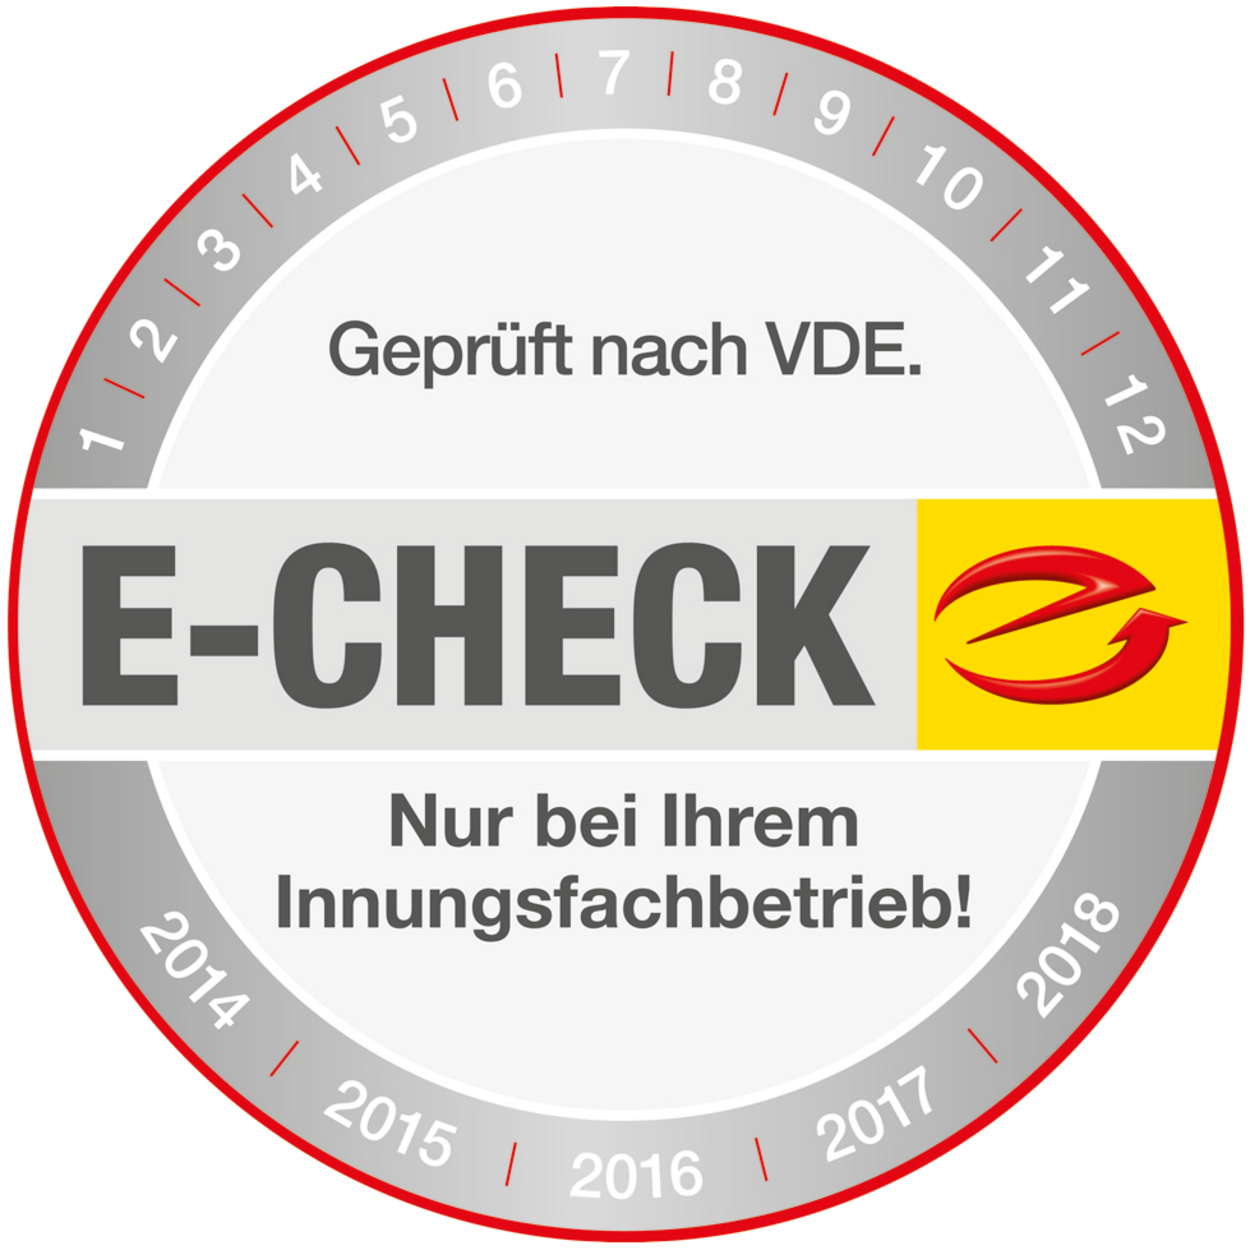 Der E-Check bei Gerd Schröder Elektroinstallation in Sondershausen